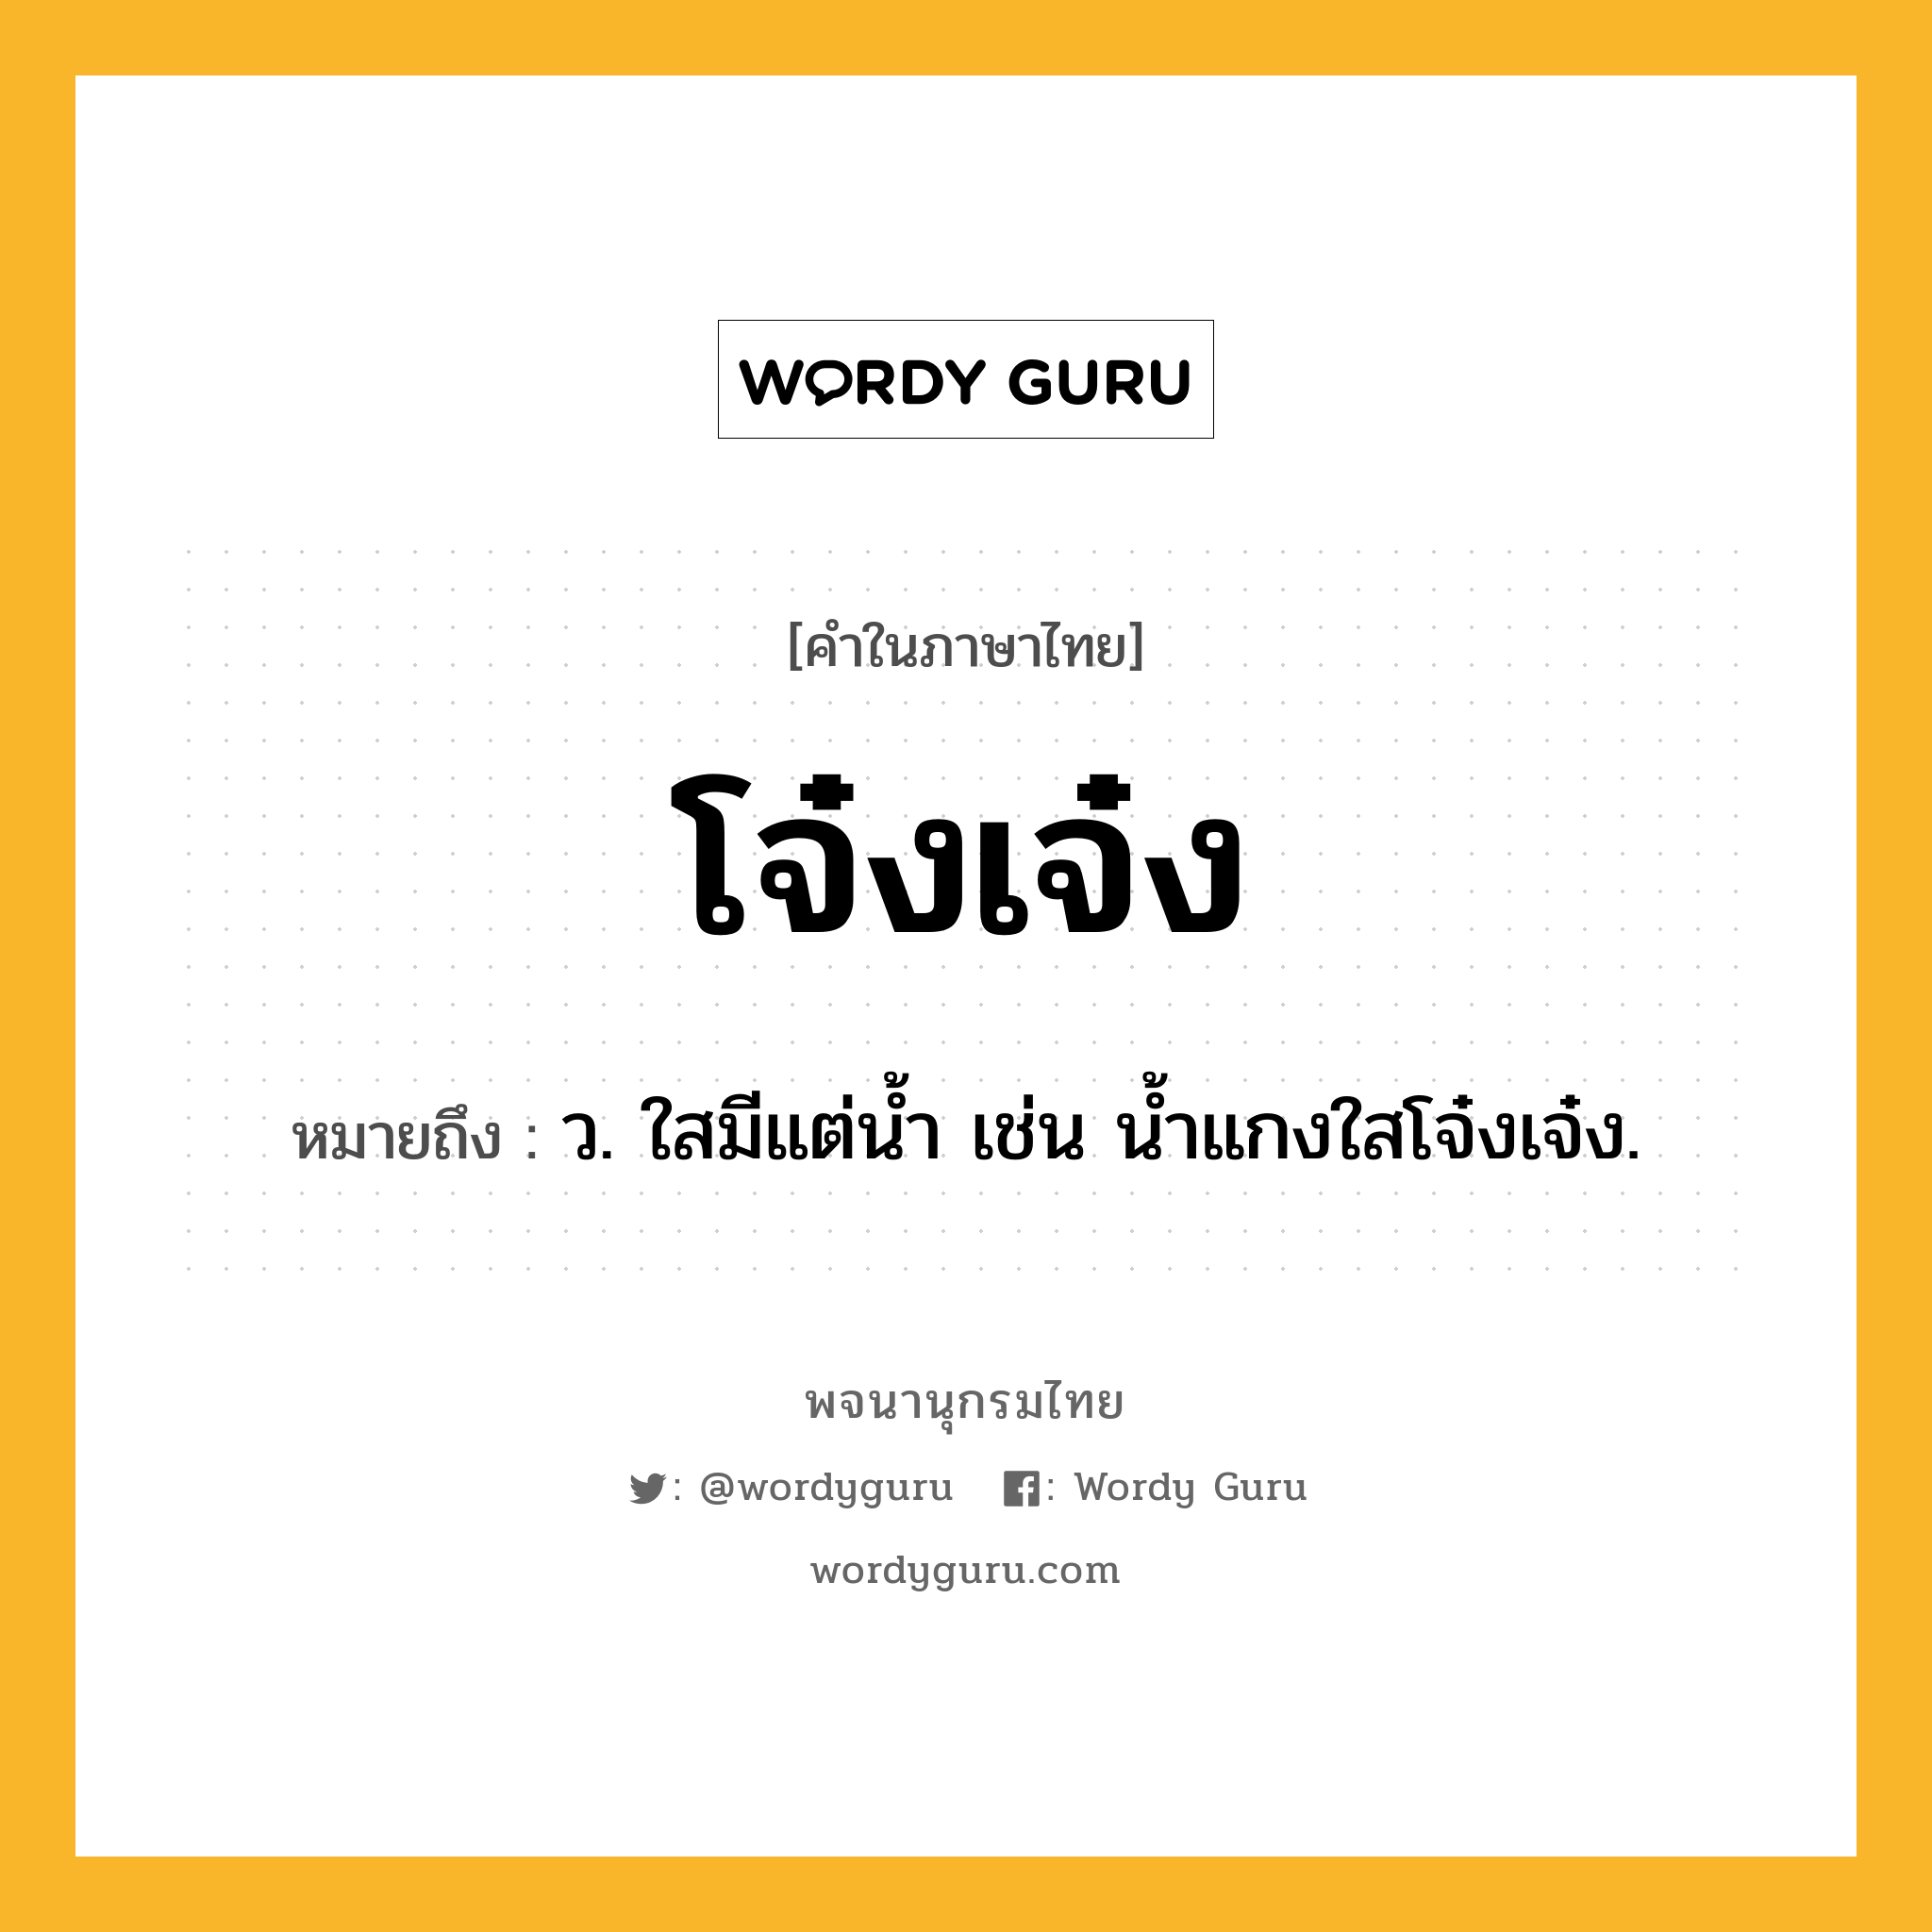 โจ๋งเจ๋ง หมายถึงอะไร?, คำในภาษาไทย โจ๋งเจ๋ง หมายถึง ว. ใสมีแต่นํ้า เช่น น้ำแกงใสโจ๋งเจ๋ง.